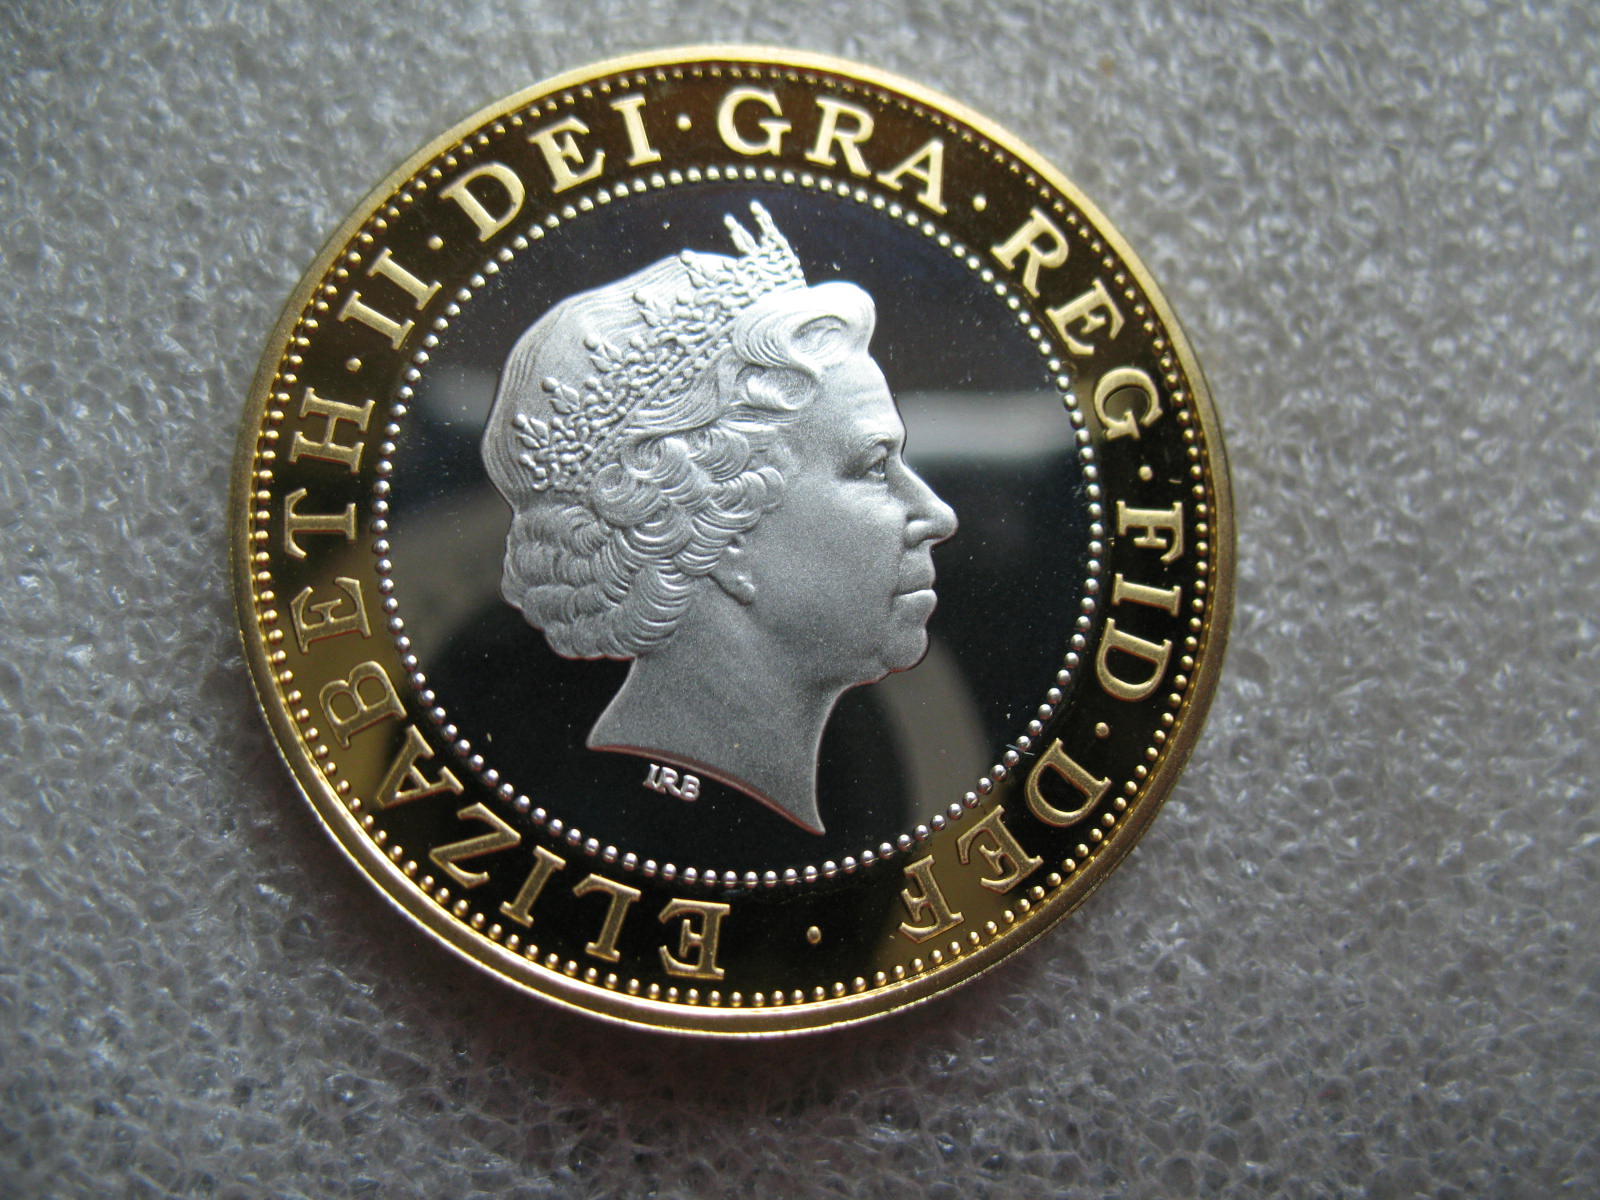 2008年英国1英镑鎏金硬币 中邮网[集邮/钱币/邮票/金银币/收藏资讯]全球最大收藏品商城